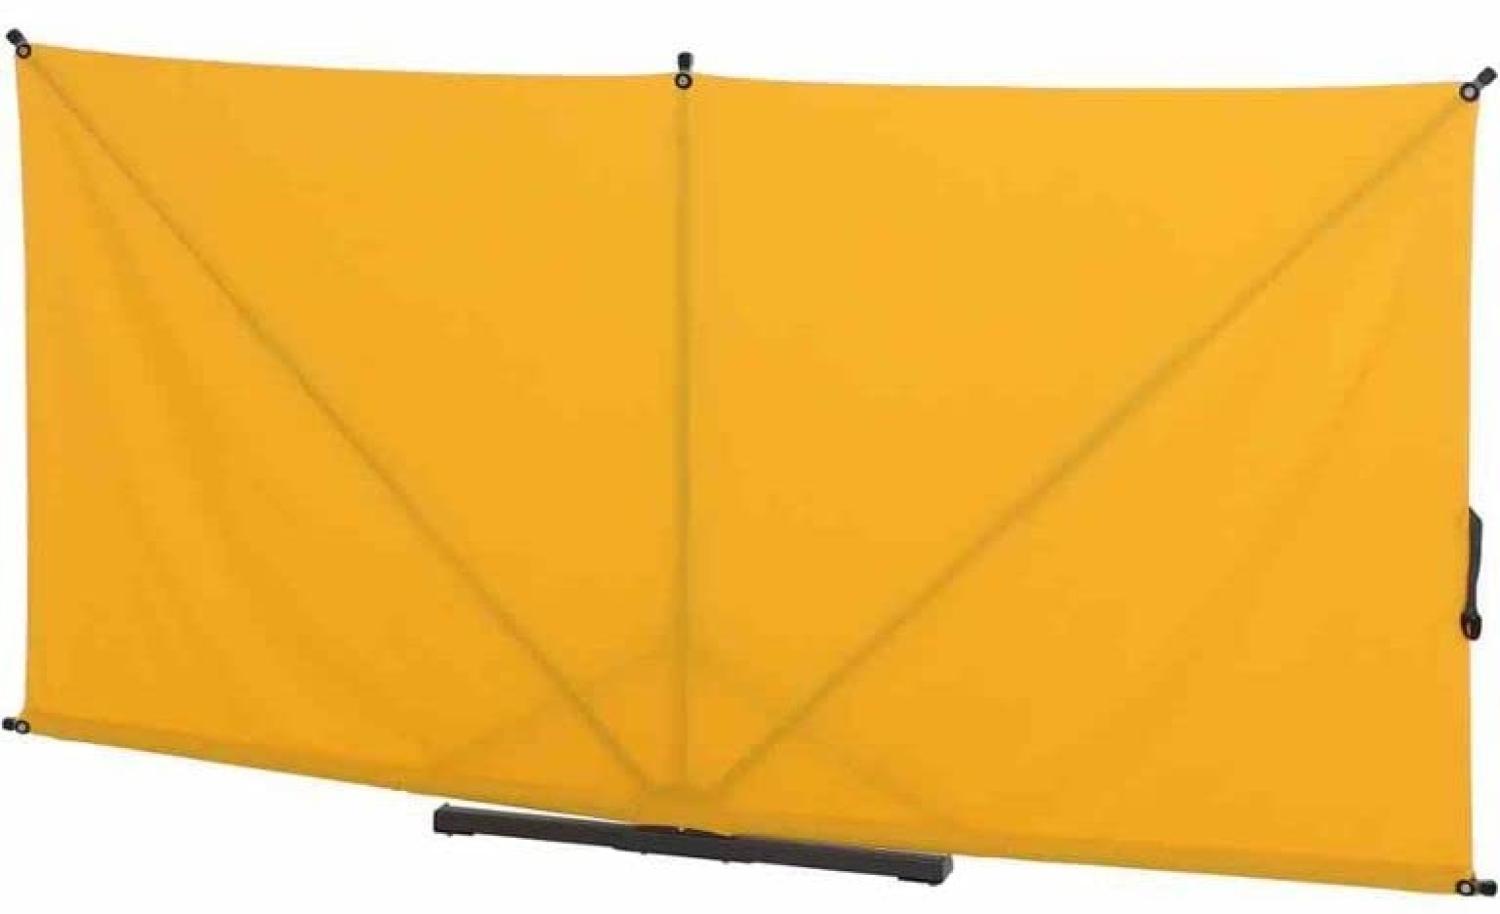 SIENA GARDEN Ben Sichtschutz 150x280 cm, gelb Gestell aus Stahl, anthrazit, Bezug aus Polyester, 250g/m² in gelb Bild 1